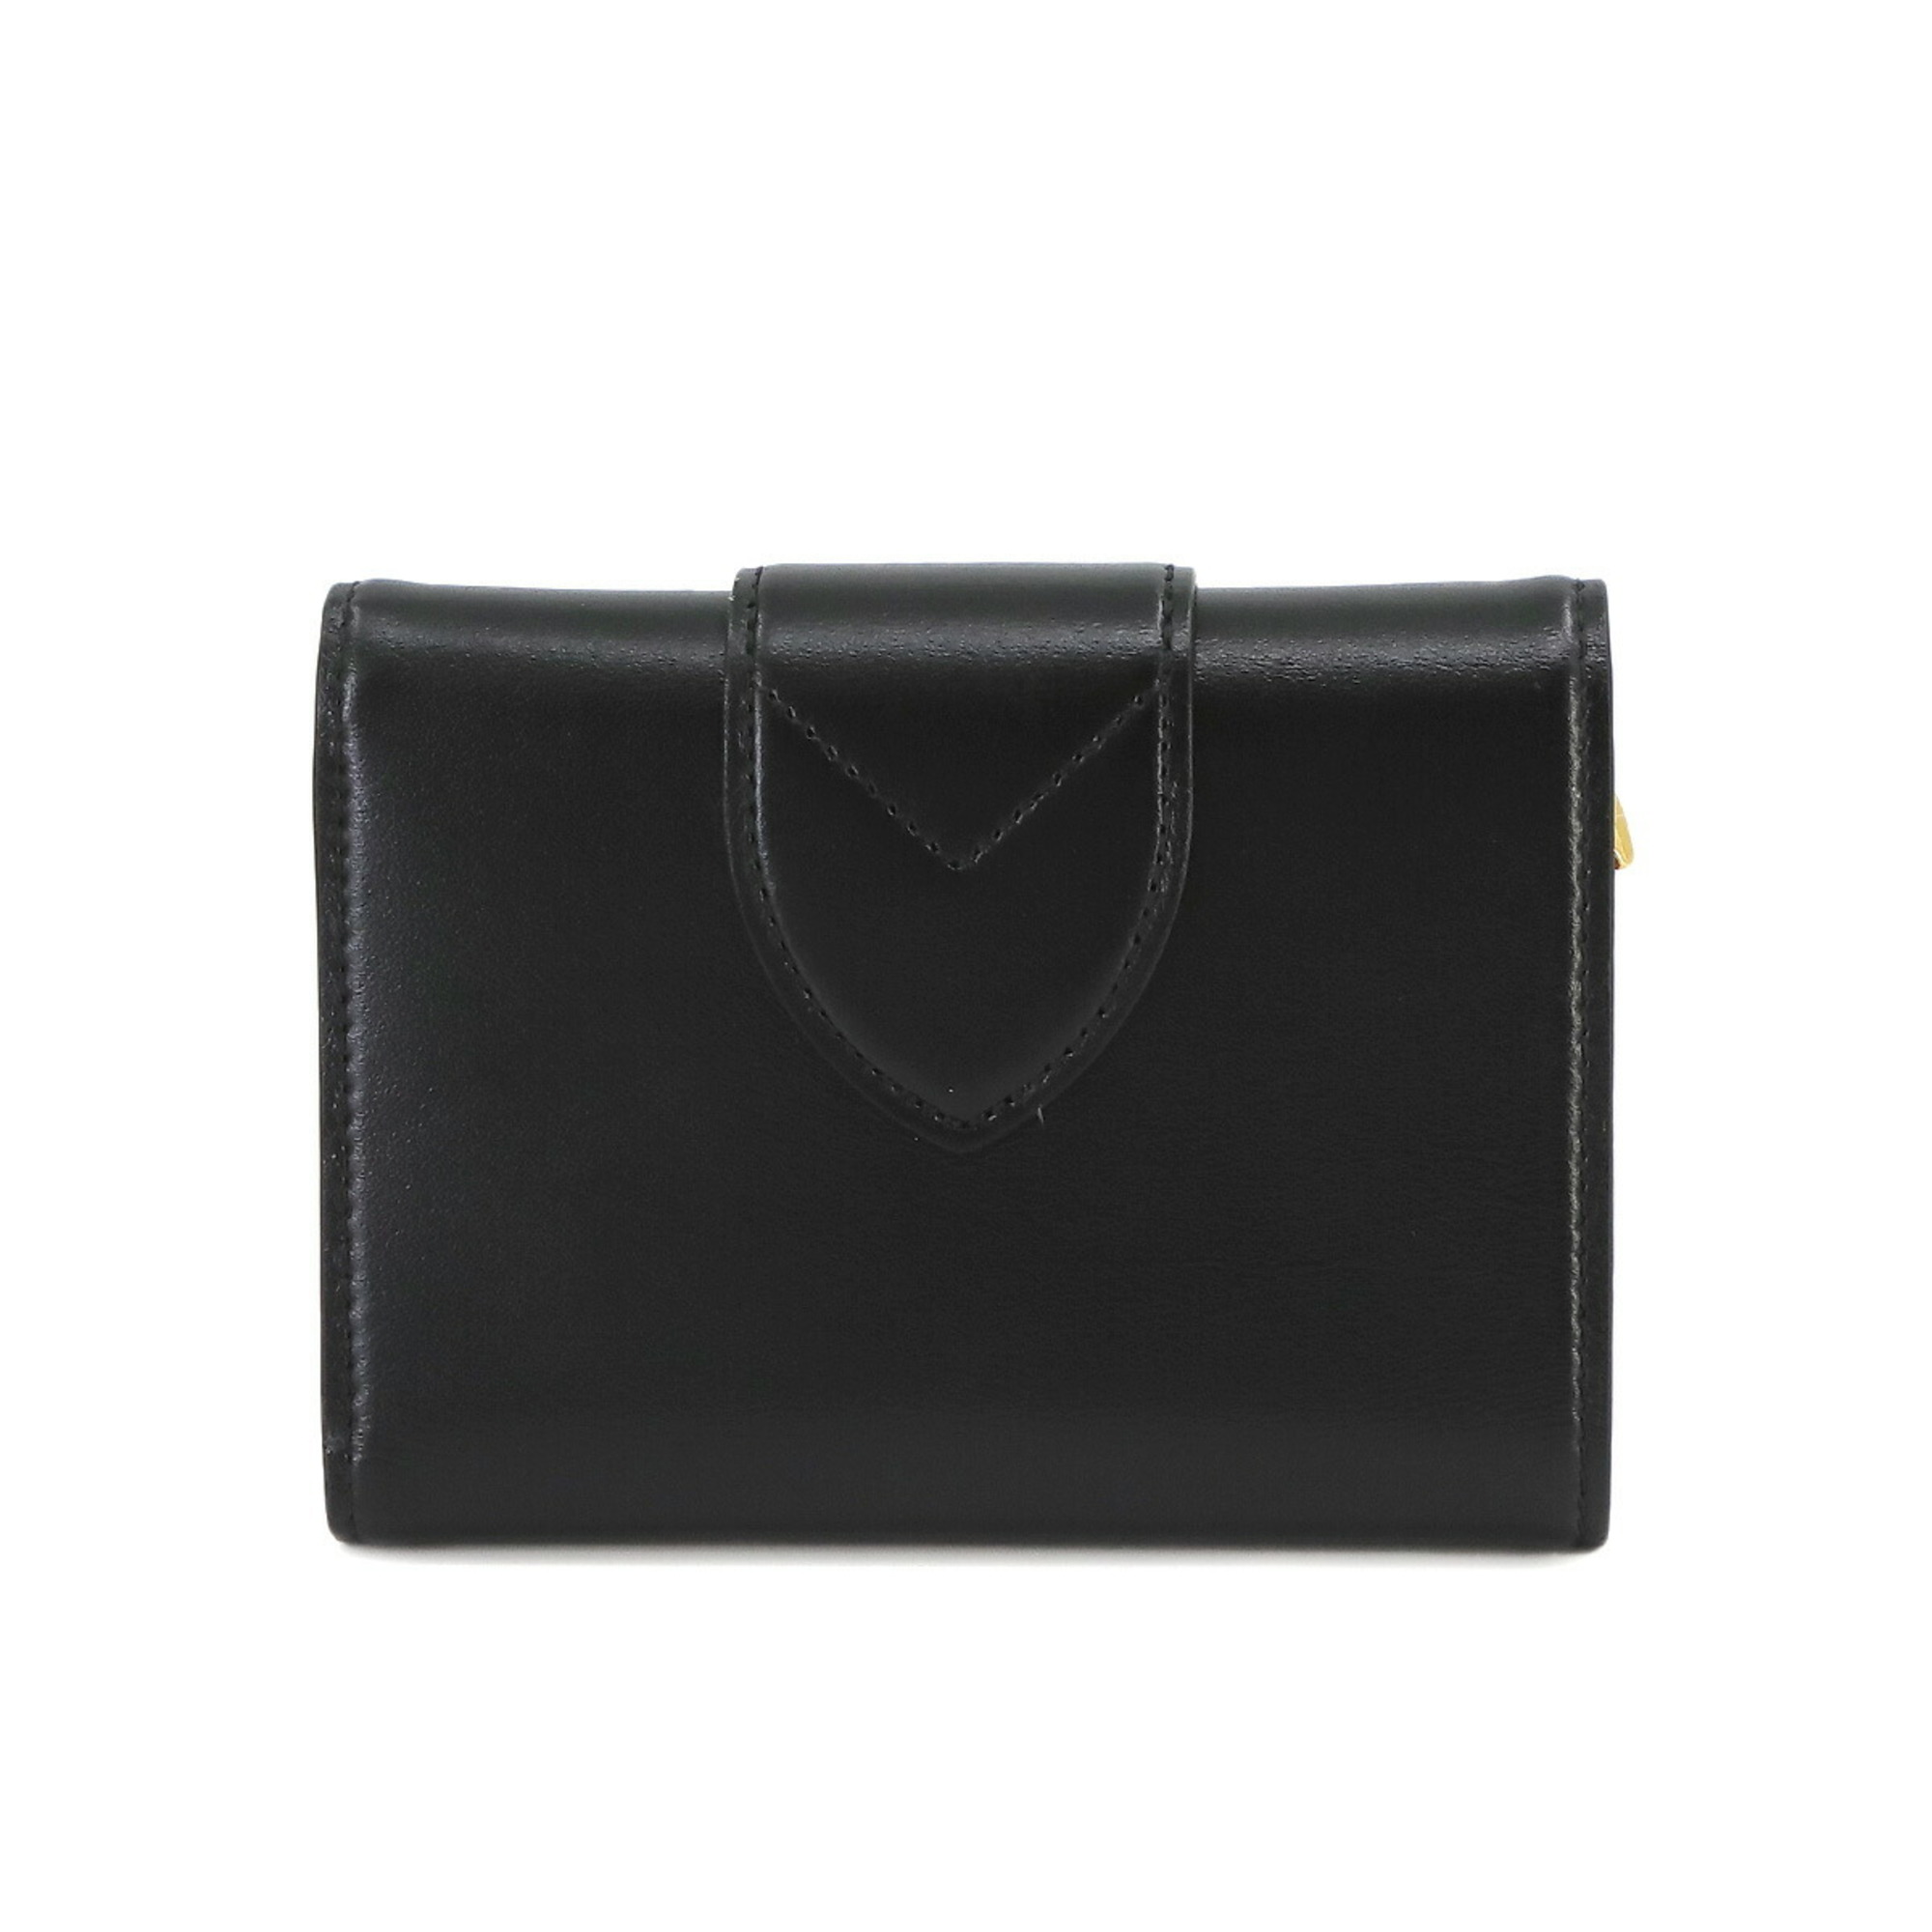 Louis Vuitton LOUIS VUITTON Portefeuille LV Pont Neuf Compact Tri-fold Leather Noir Gold Hardware M69175 RFID PONT 9 Wallet